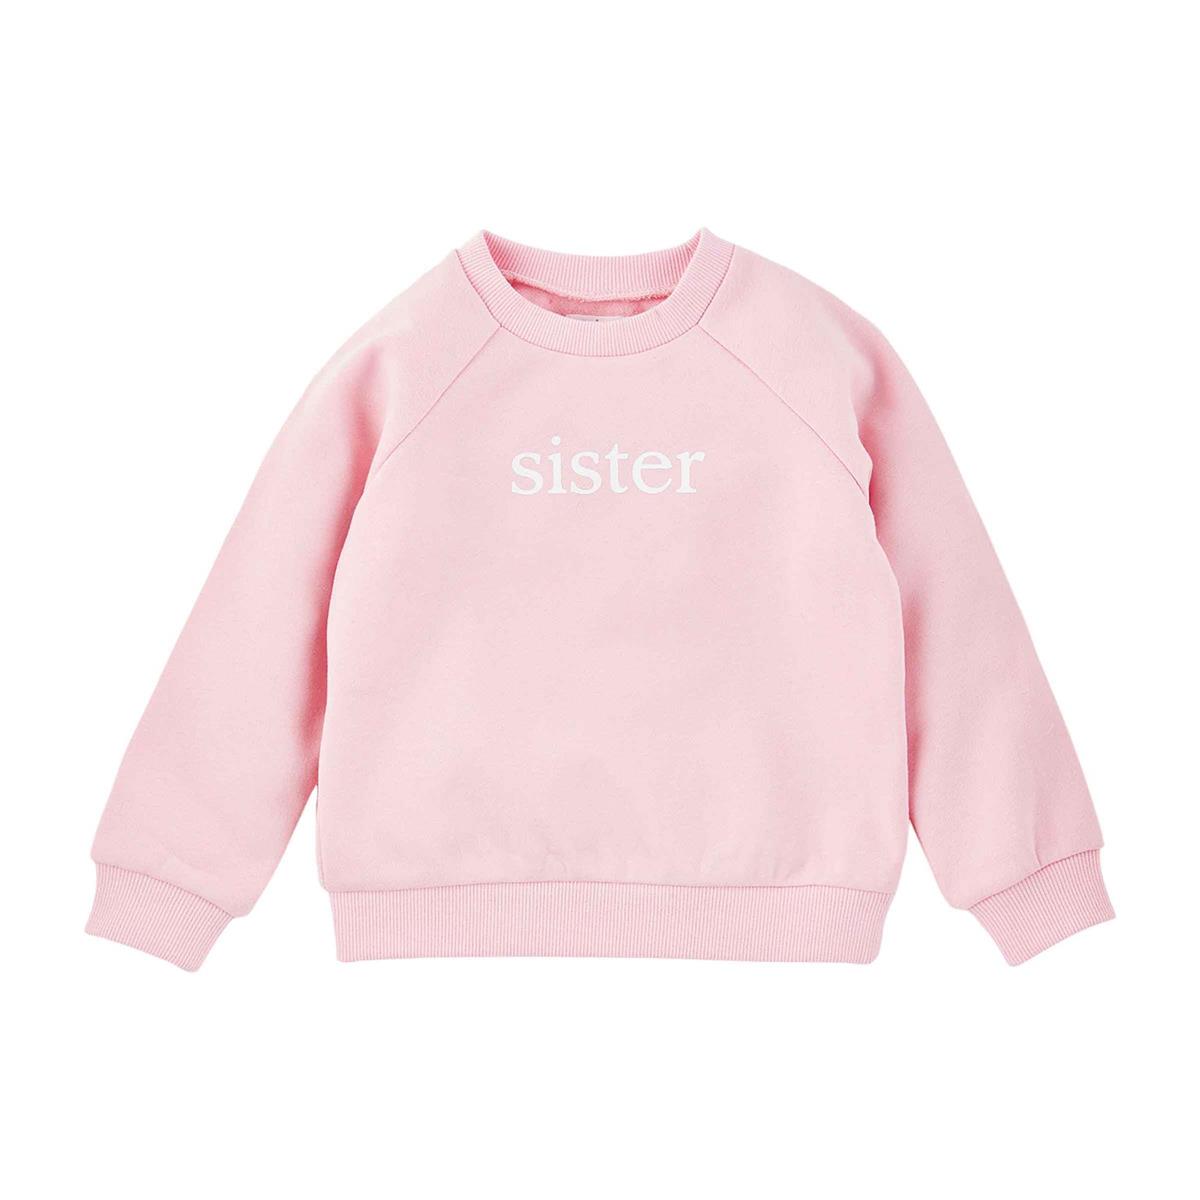 Sister Sweatshirt Clothing Mudpie   